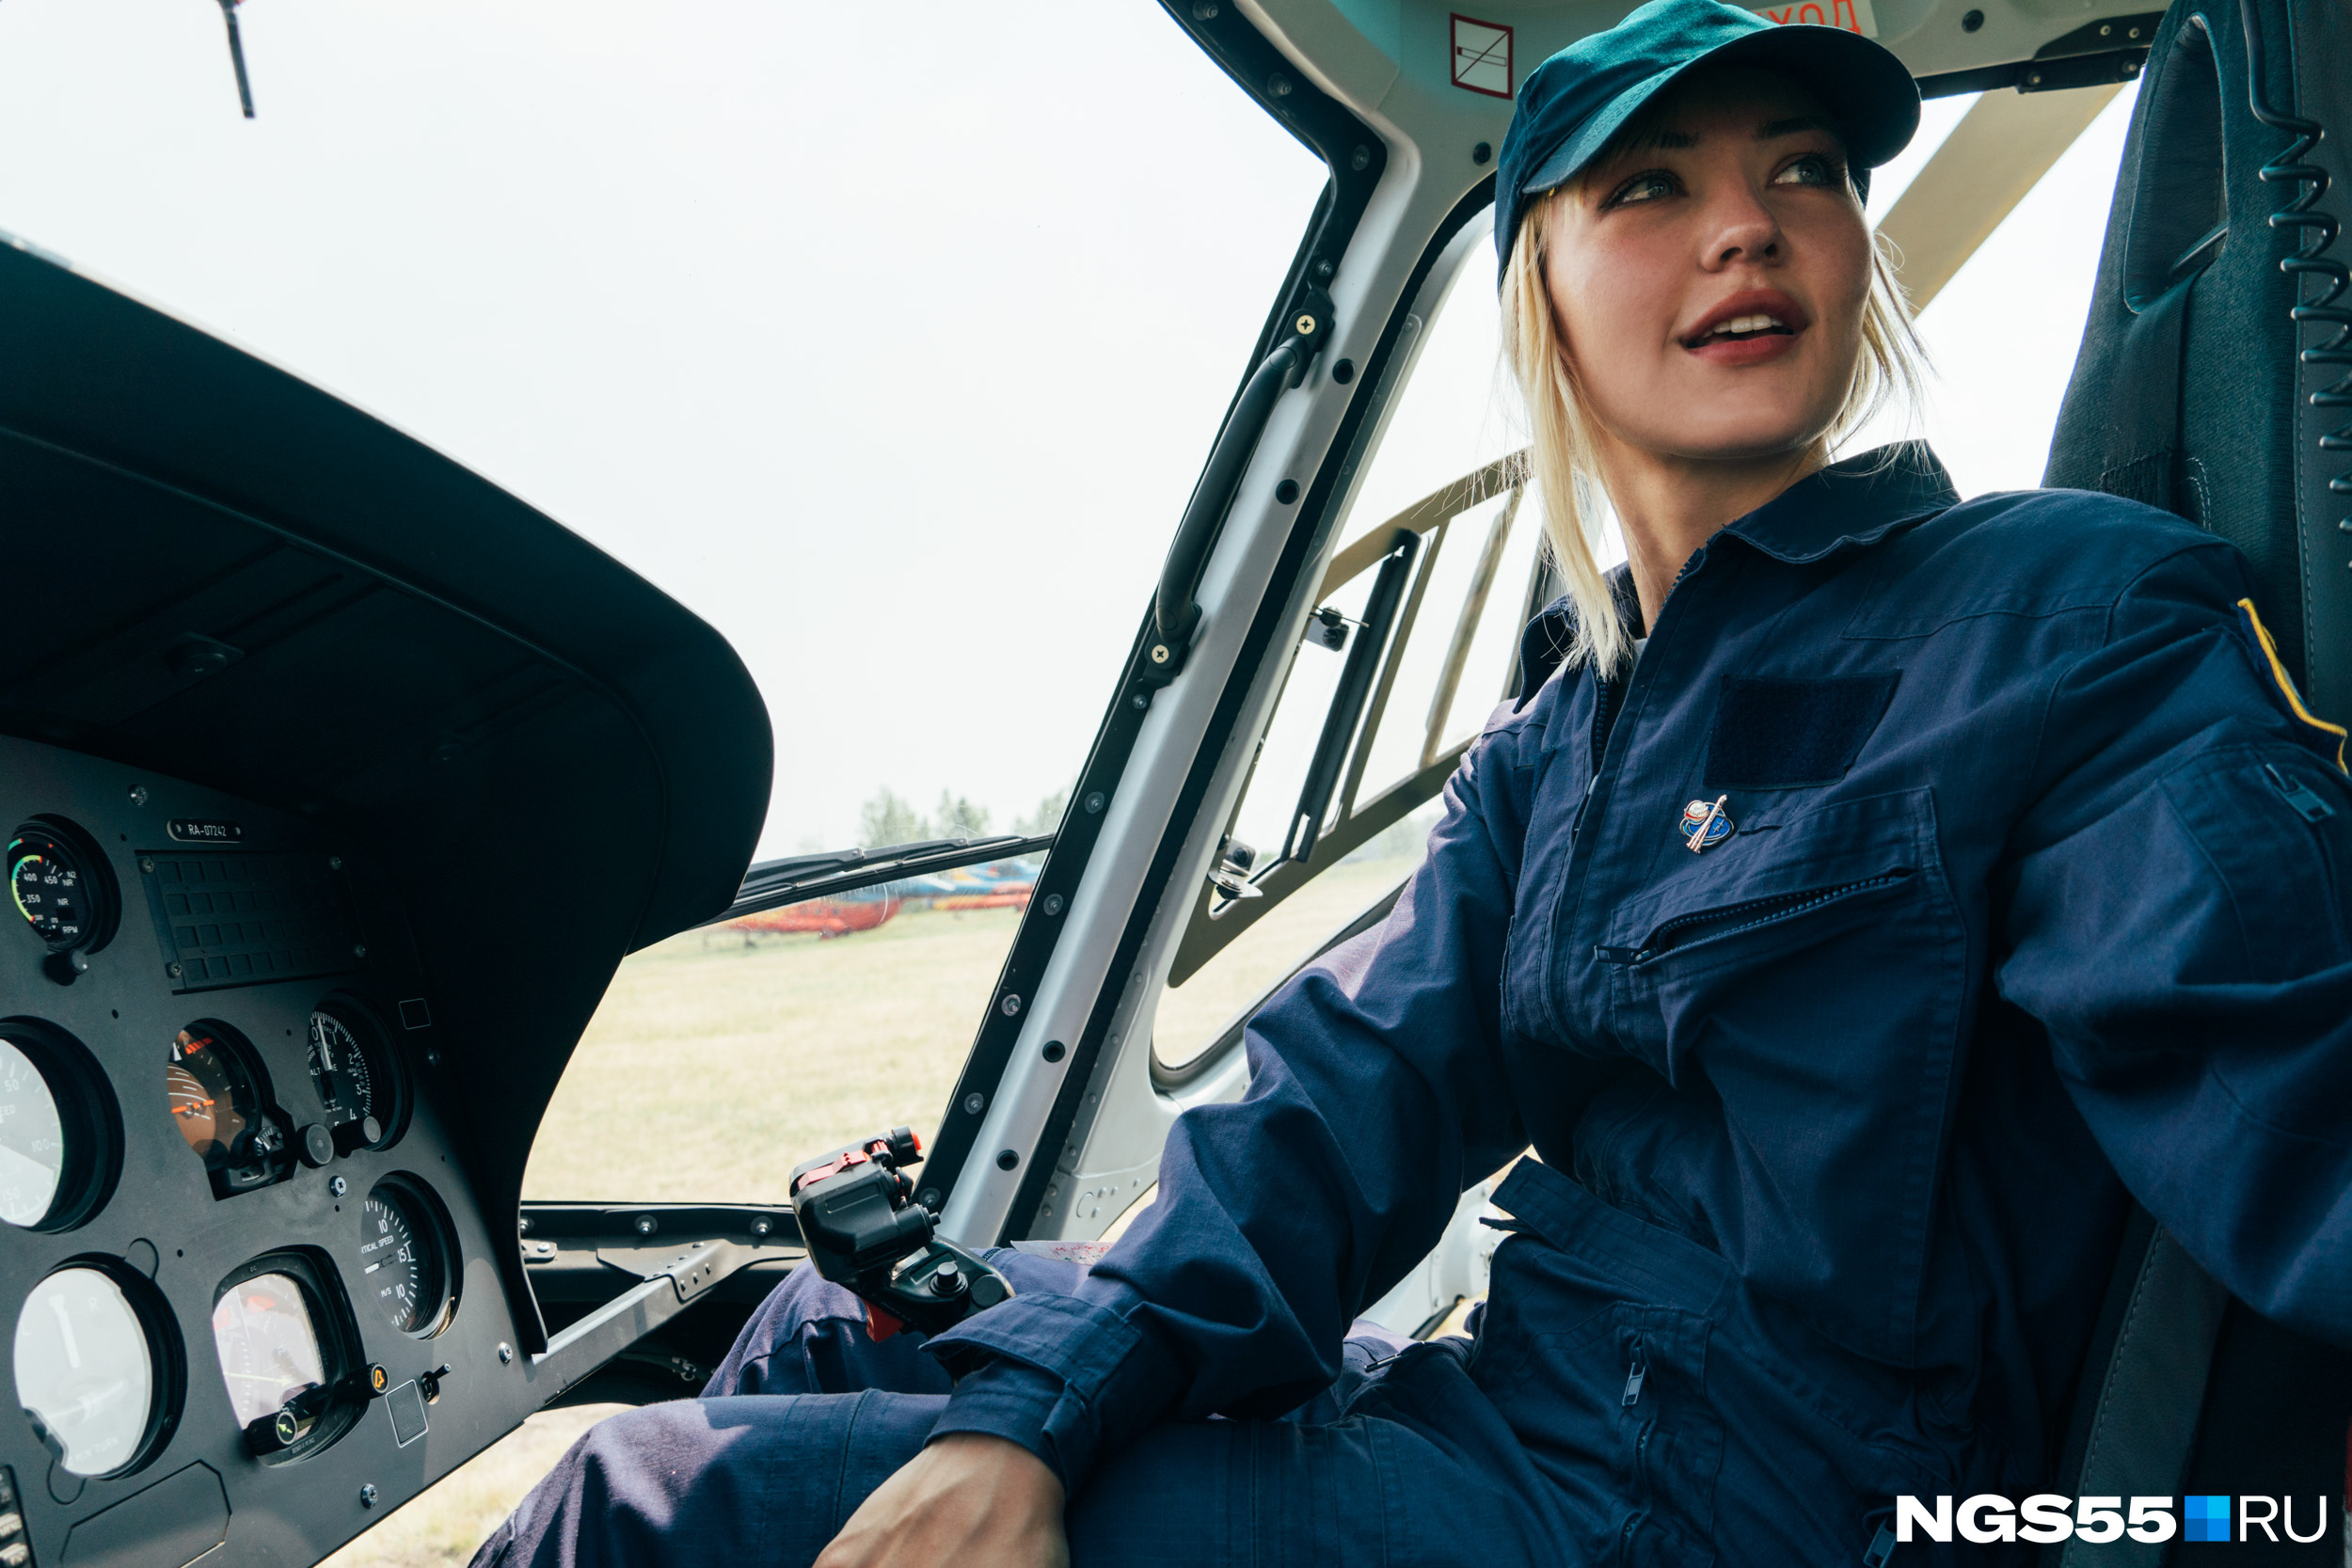 Впервые оказавшись за штурвалом вертолета, Ирина не испытывала страх